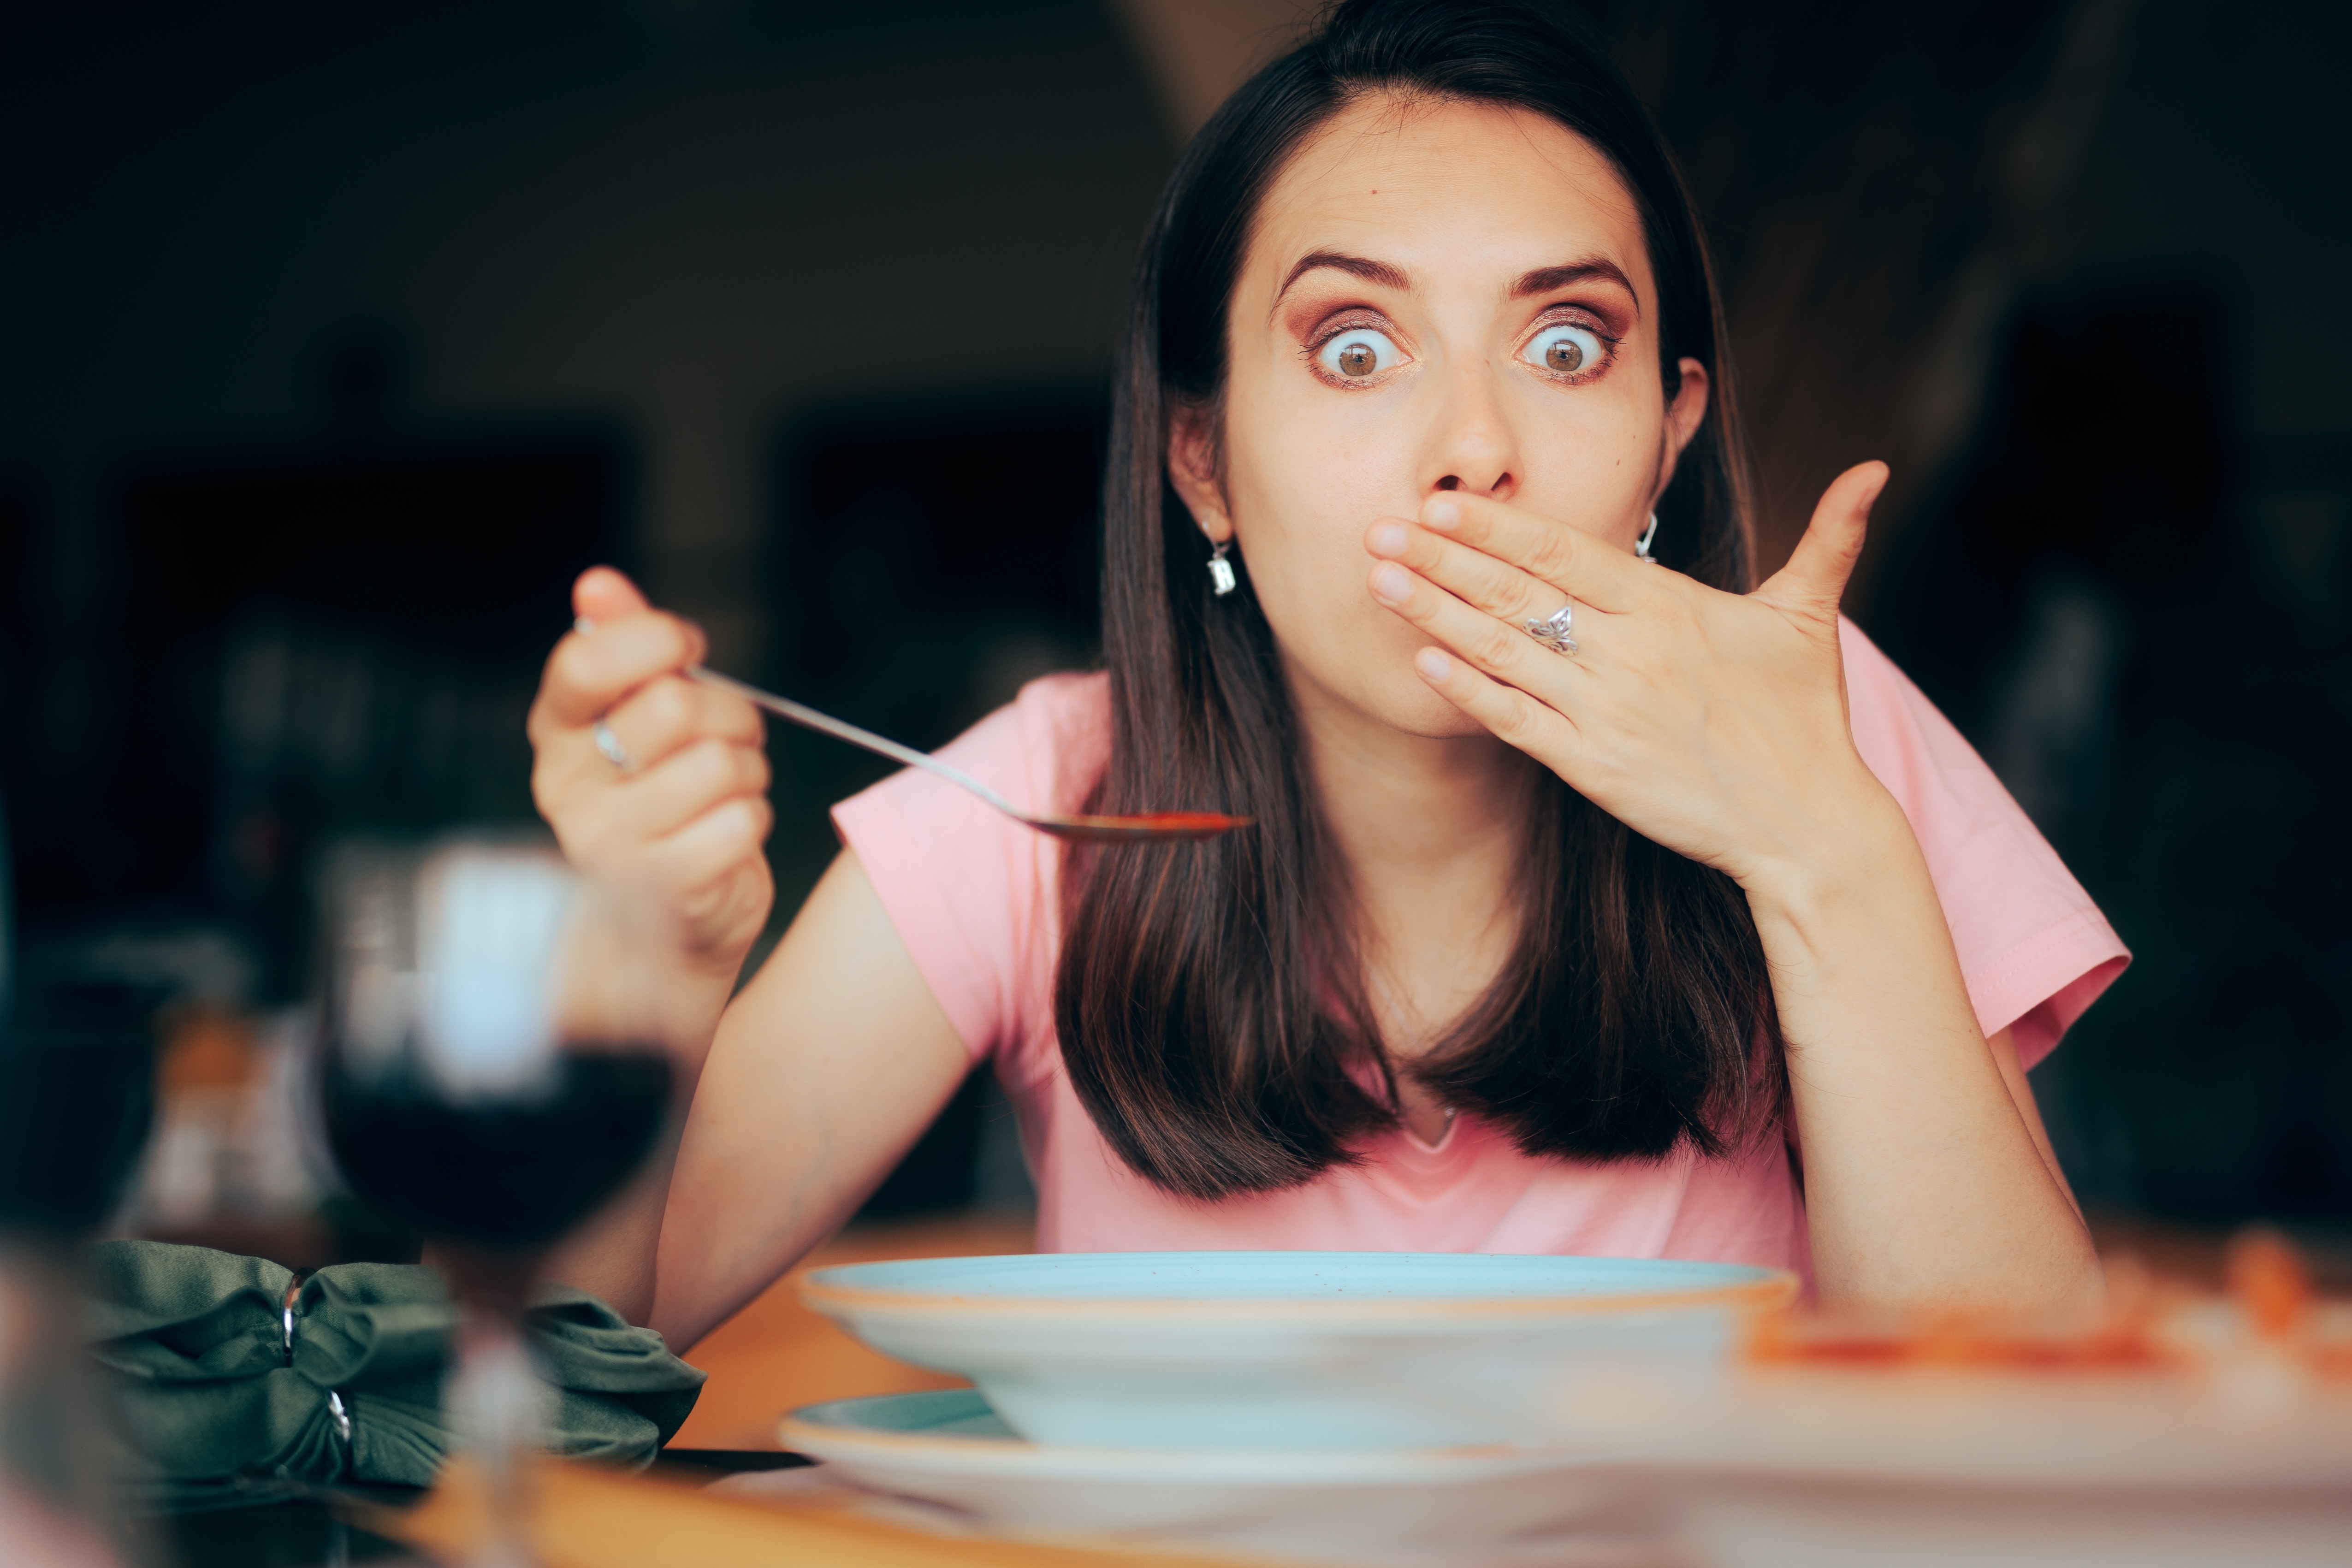 femme choquée par la nourriture | Source : Shutterstock